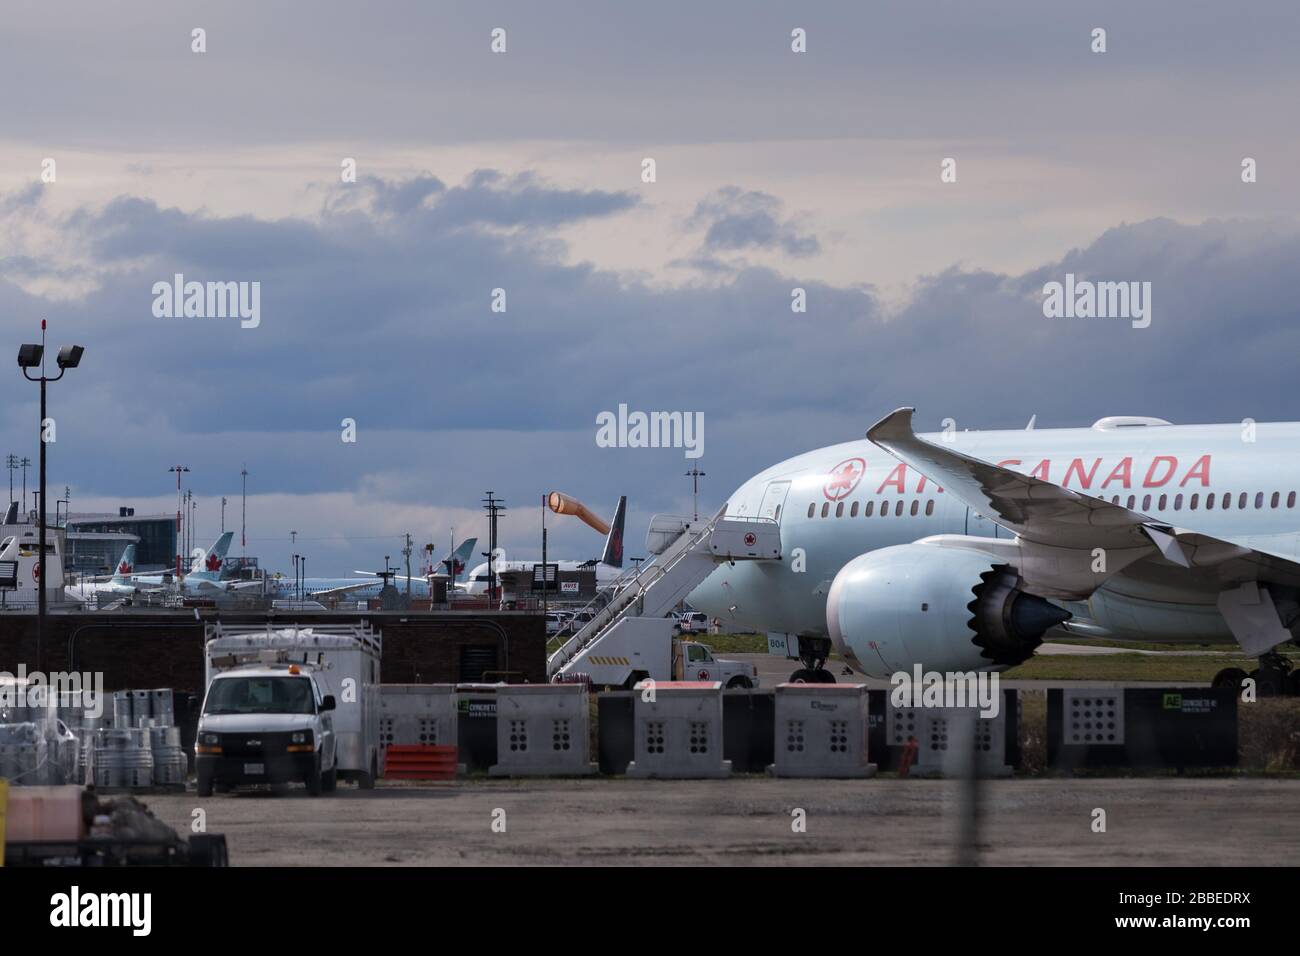 RICHMOND, BC, CANADA - 29 DE MARZO de 2020: Air Canada 787 Dreamliner estacionado en el asfalto con otros aviones en el fondo durante una reducción global en Foto de stock